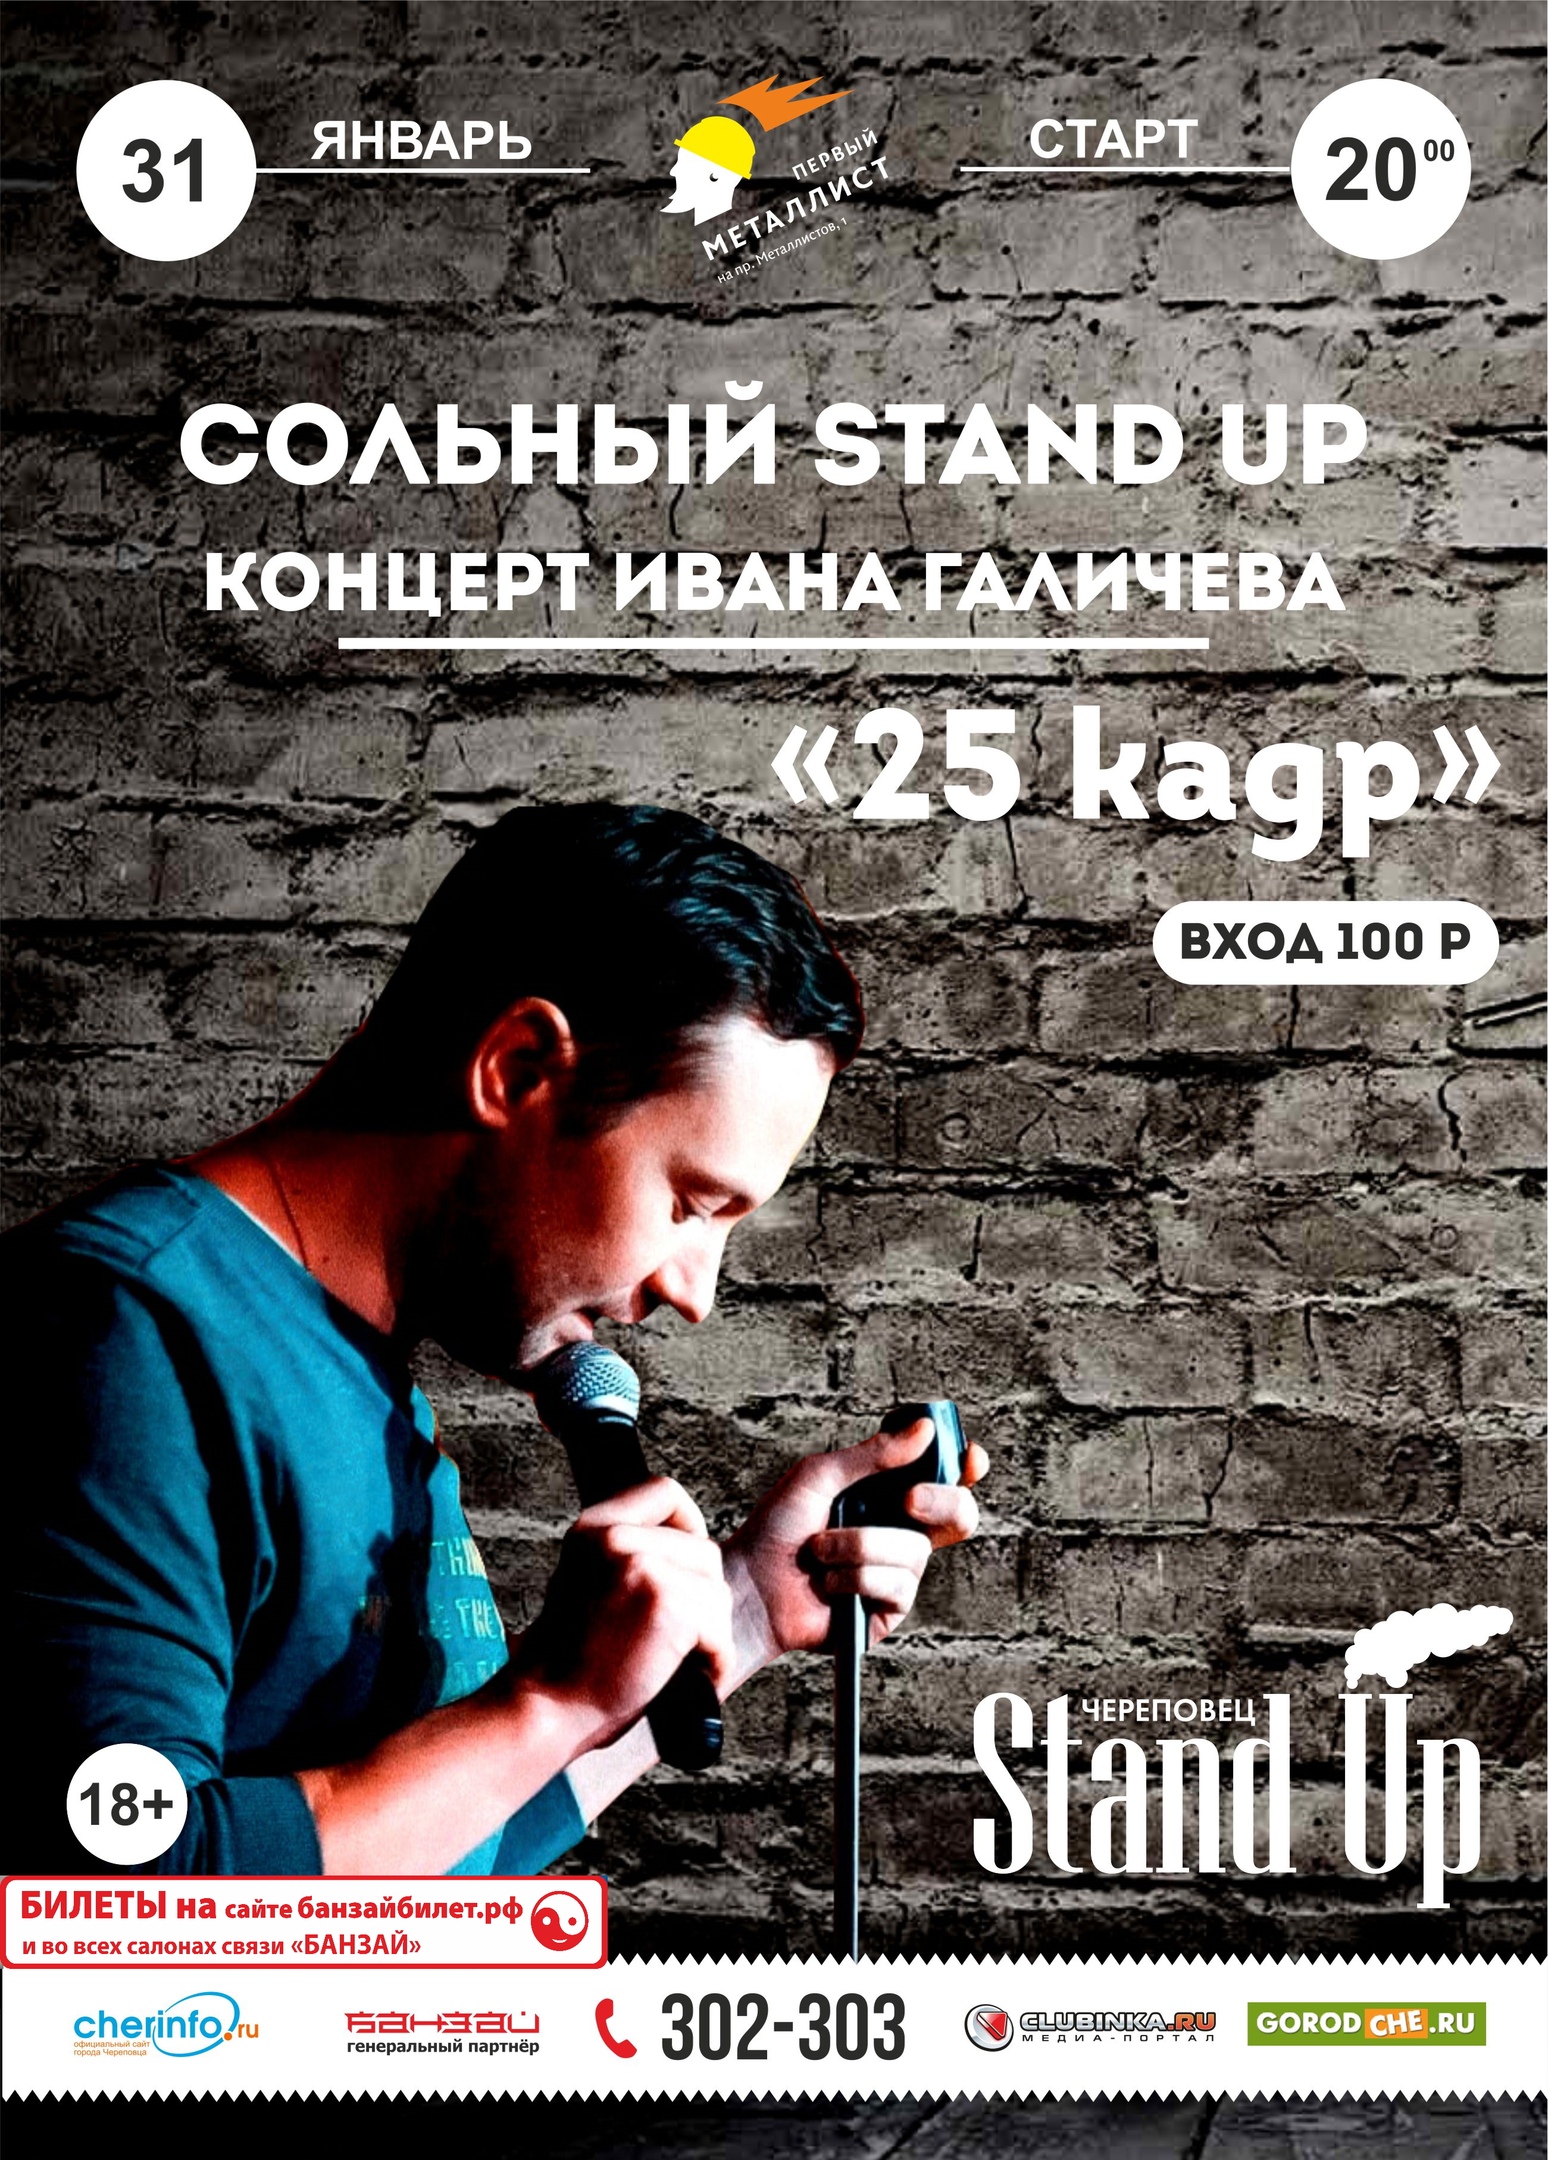 Stand Up: Иван Галичев